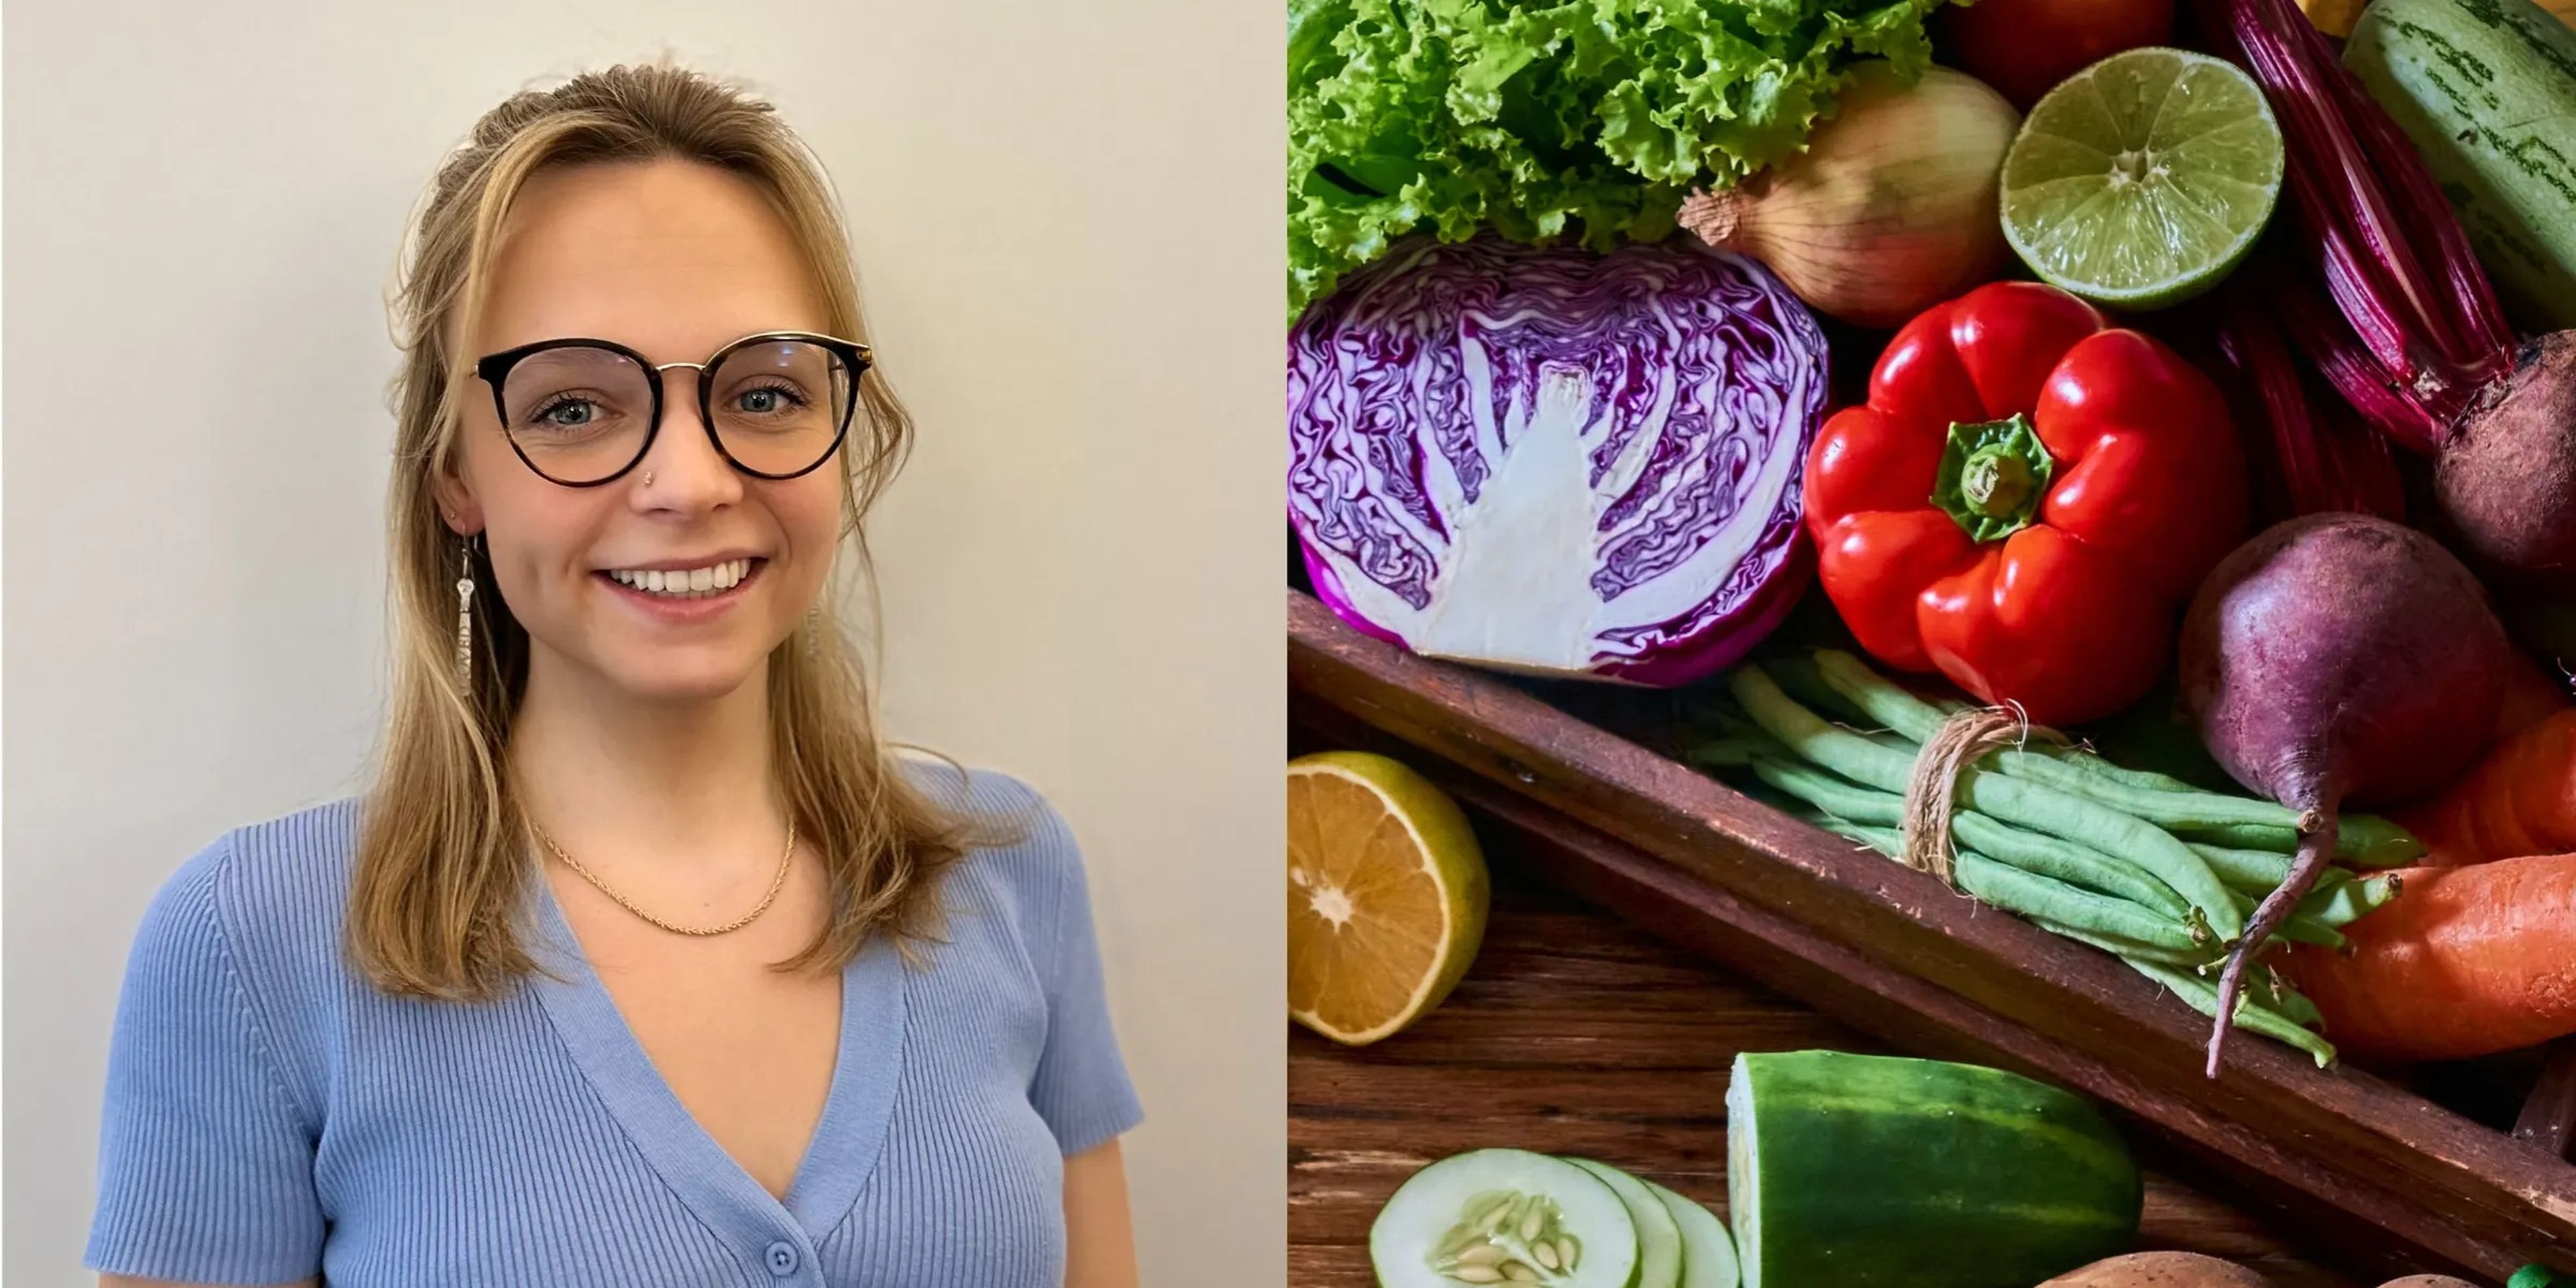 Gabrielle Morse come hasta 30 vegetales a la semana para cuidar su microbioma.